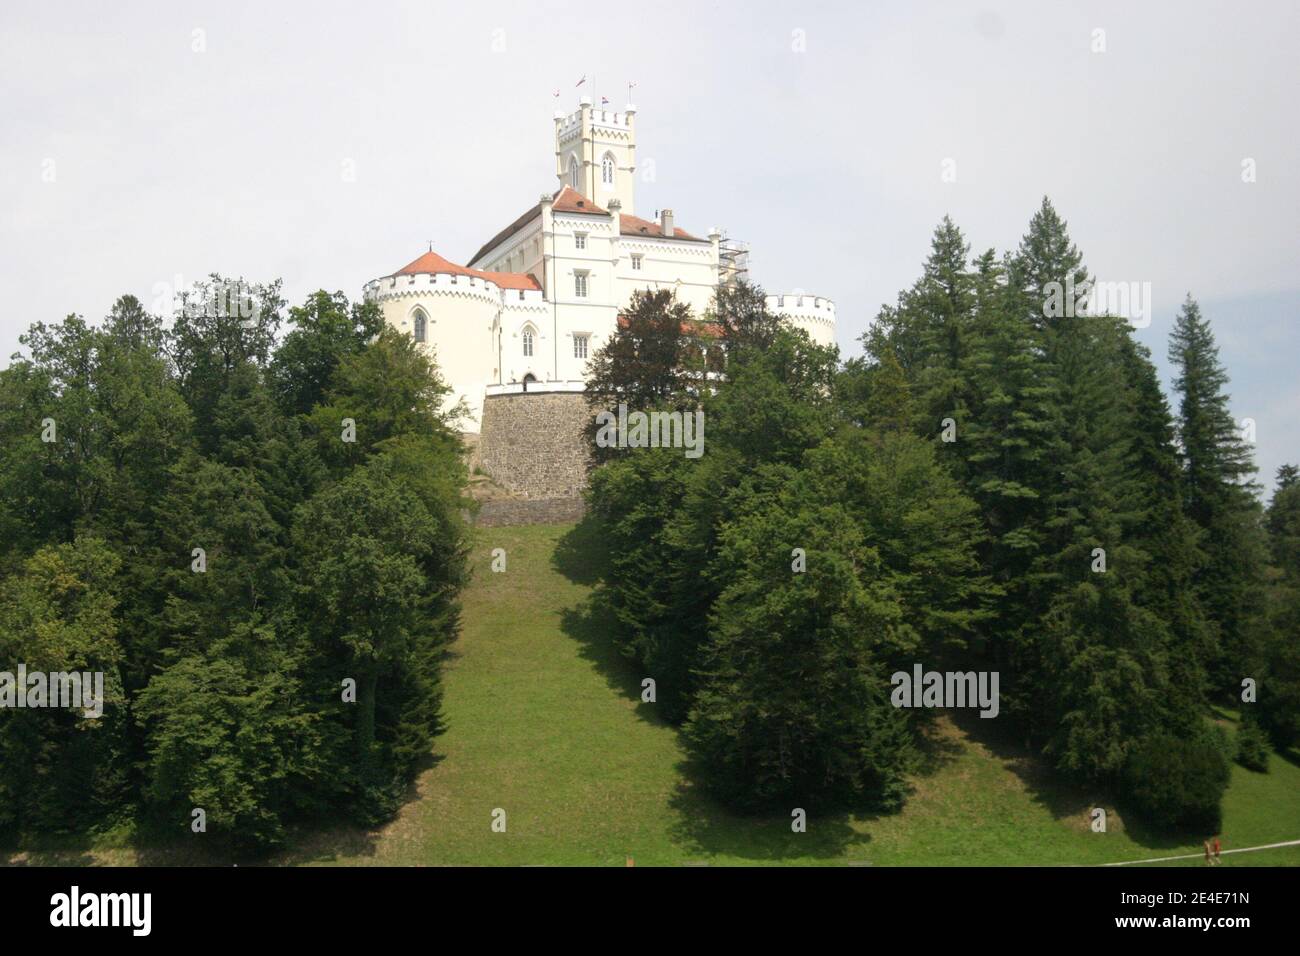 Primo piano di un castello medievale in cima alla collina, circondato da boschi, foto scattata con teleobiettivo, in una giornata parzialmente nuvolosa d'estate Foto Stock